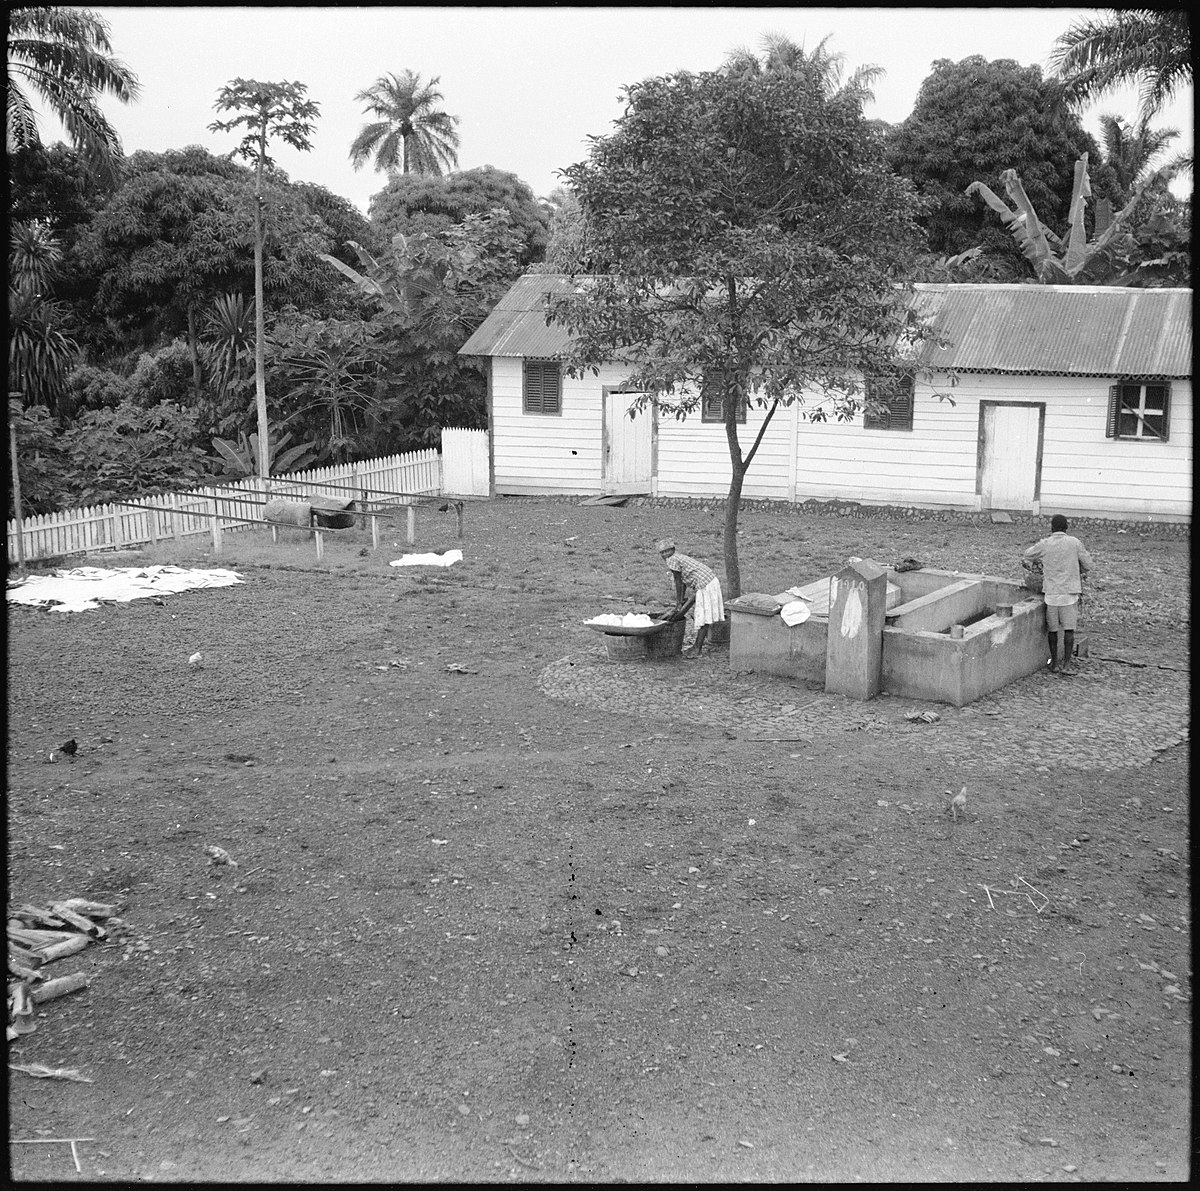 Portugal, San Thomé (São Tomé und Príncipe): Landschaft; Baracke im Hintergrund; Frau und Mann auf offenem Platz am waschen